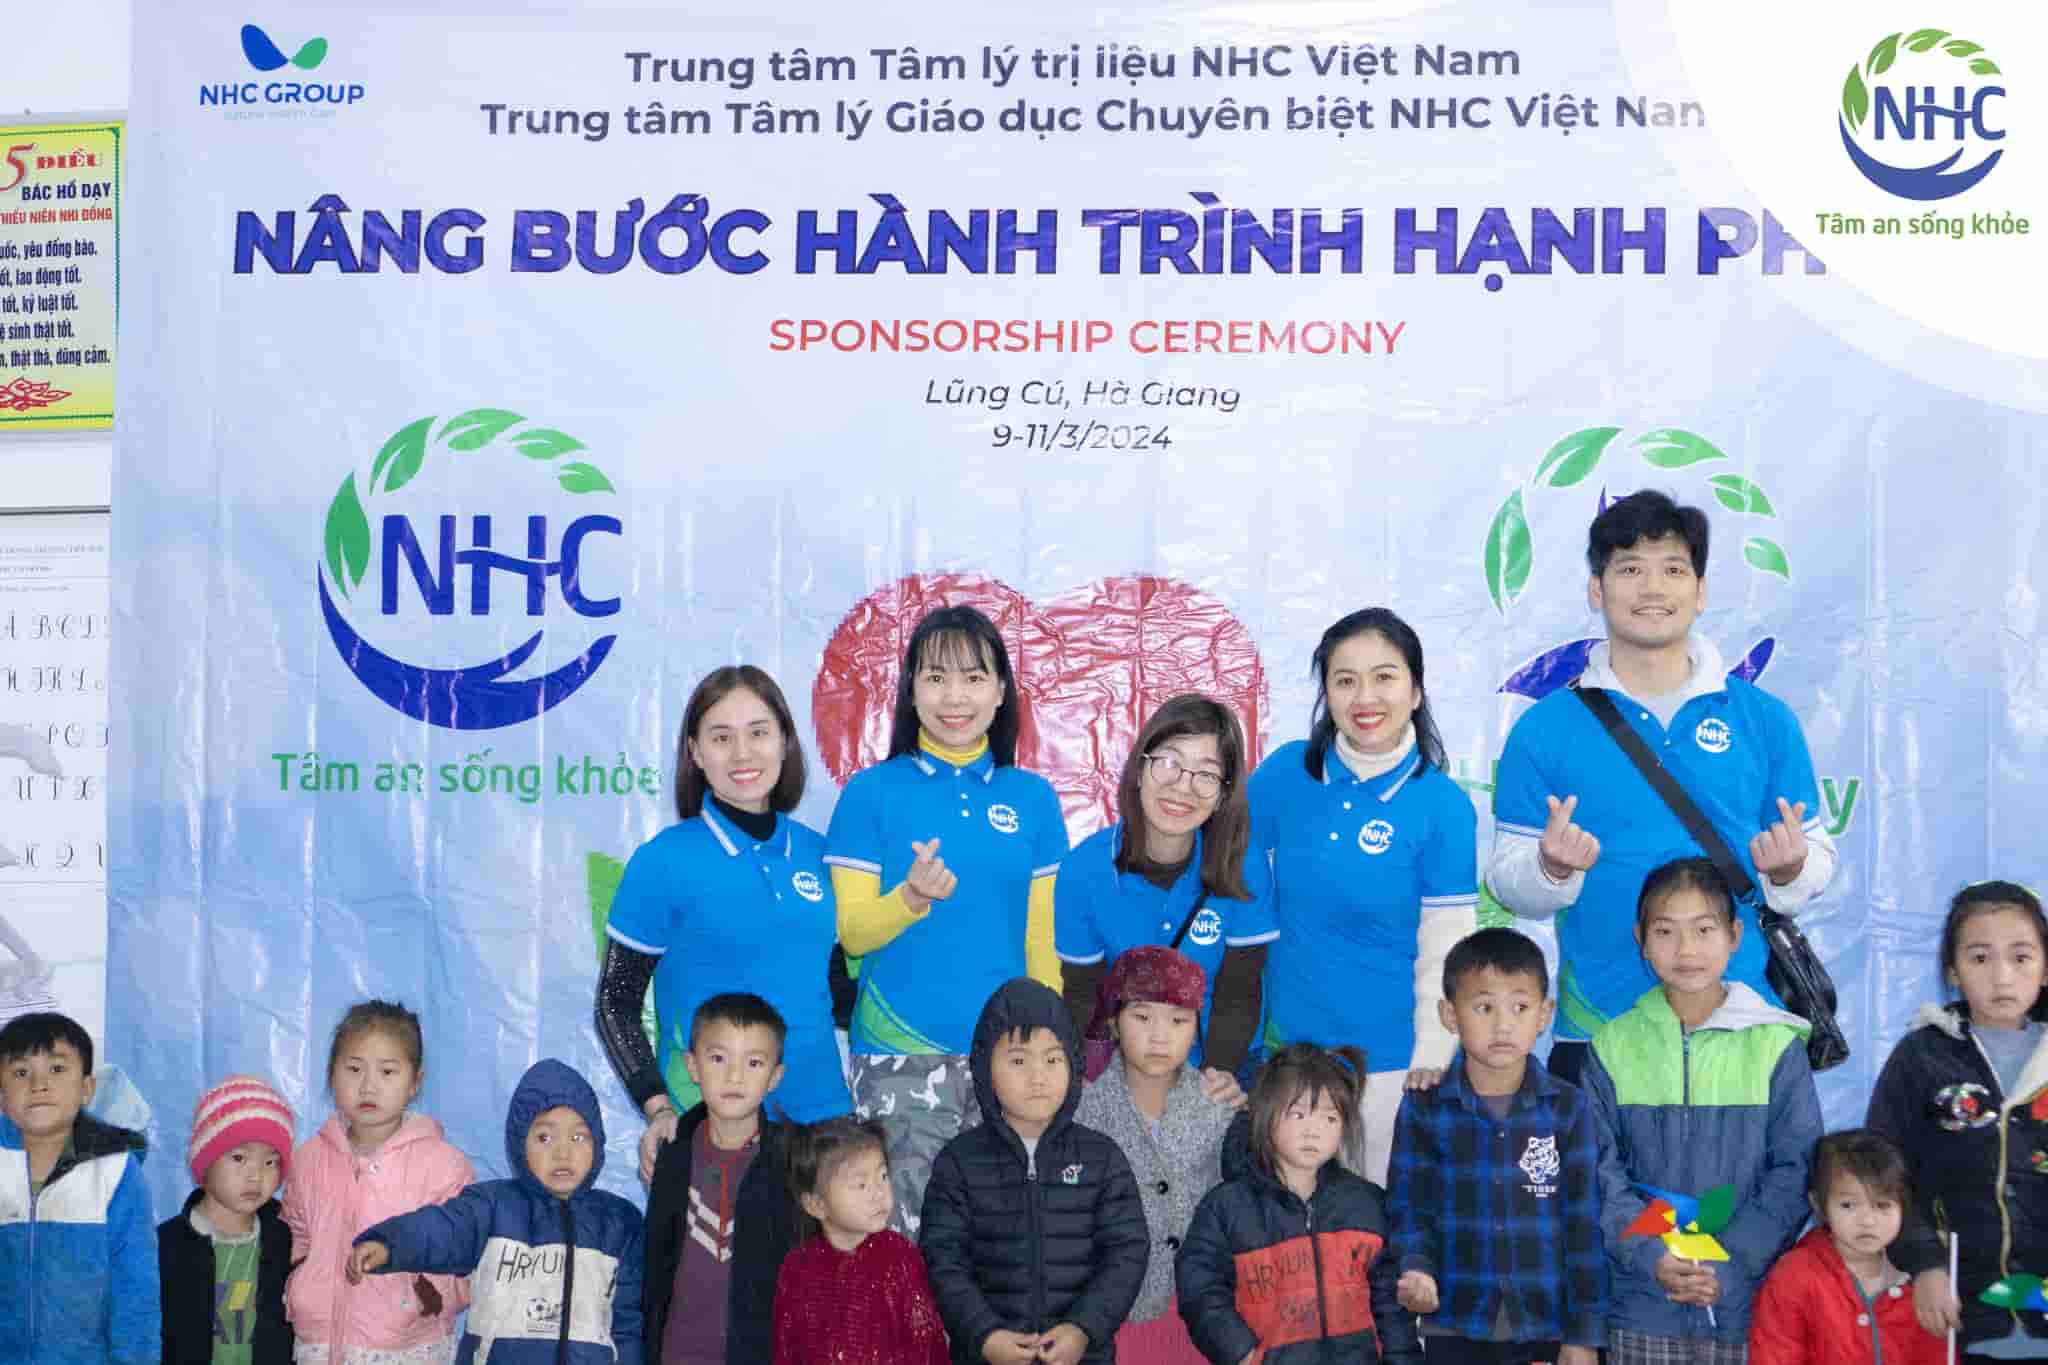 Chương trình thiện nguyện NHC Việt Nam - Nâng bước hành trình hạnh phúc tại Hà Giang.